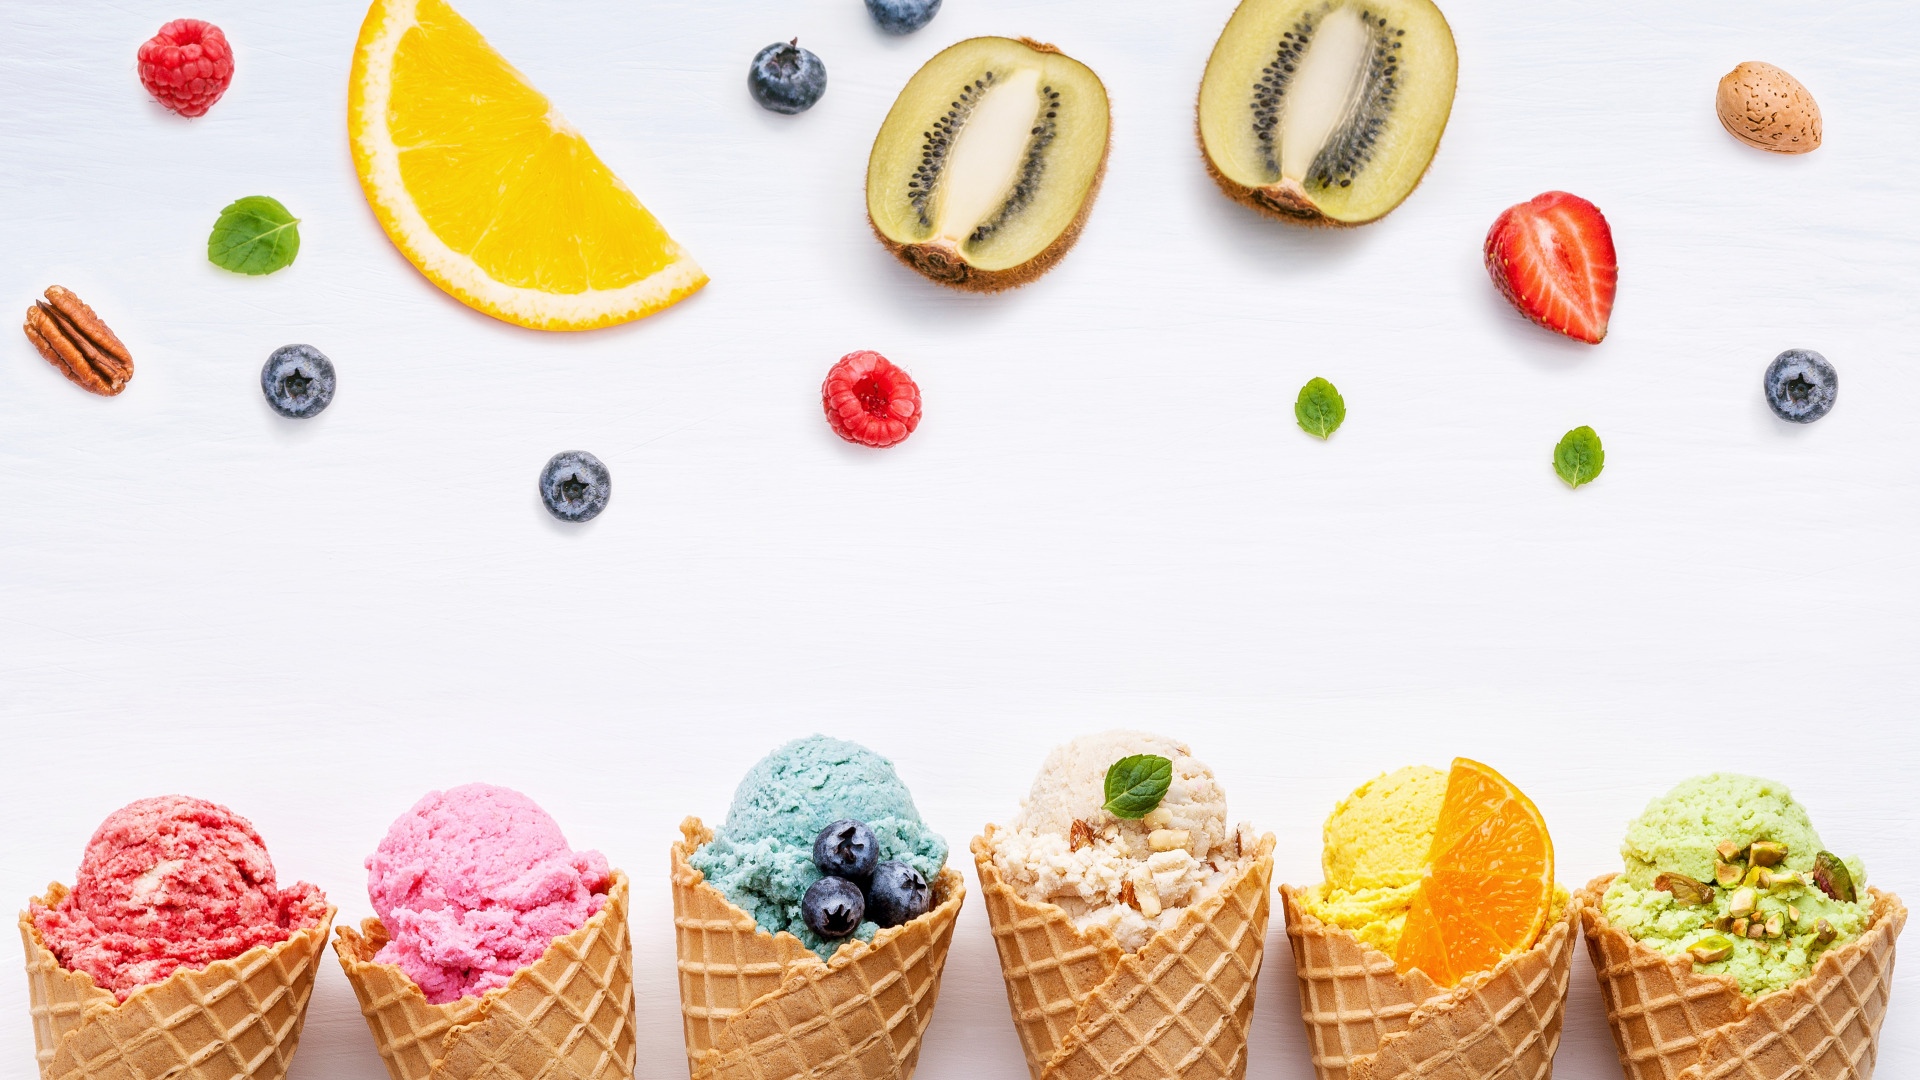 全世界最大彩虹霜淇淋，讓你一秒來到日本北海道！彰化溪湖糖廠。伴手禮推薦『66 cheesecake北海道起司蛋糕專門店』 - 阿華田的美食日記